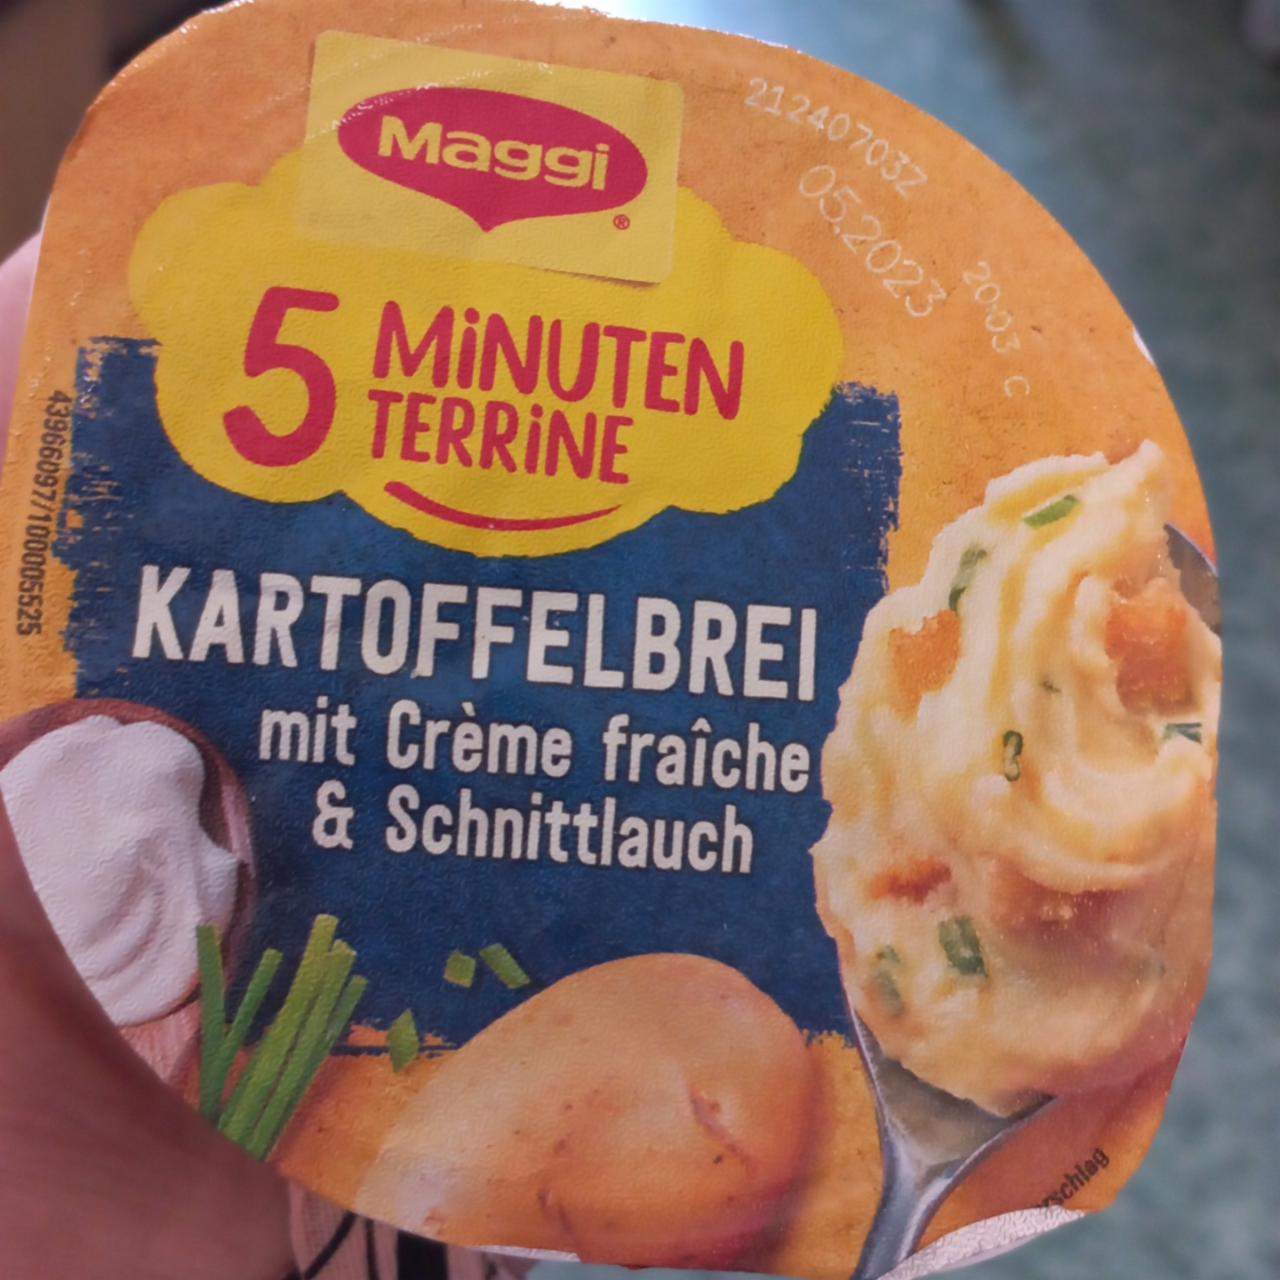 Fotografie - 5 Minuten Terrine Kartoffelbrei mit Crème fraîche & Schnittlauch Maggi